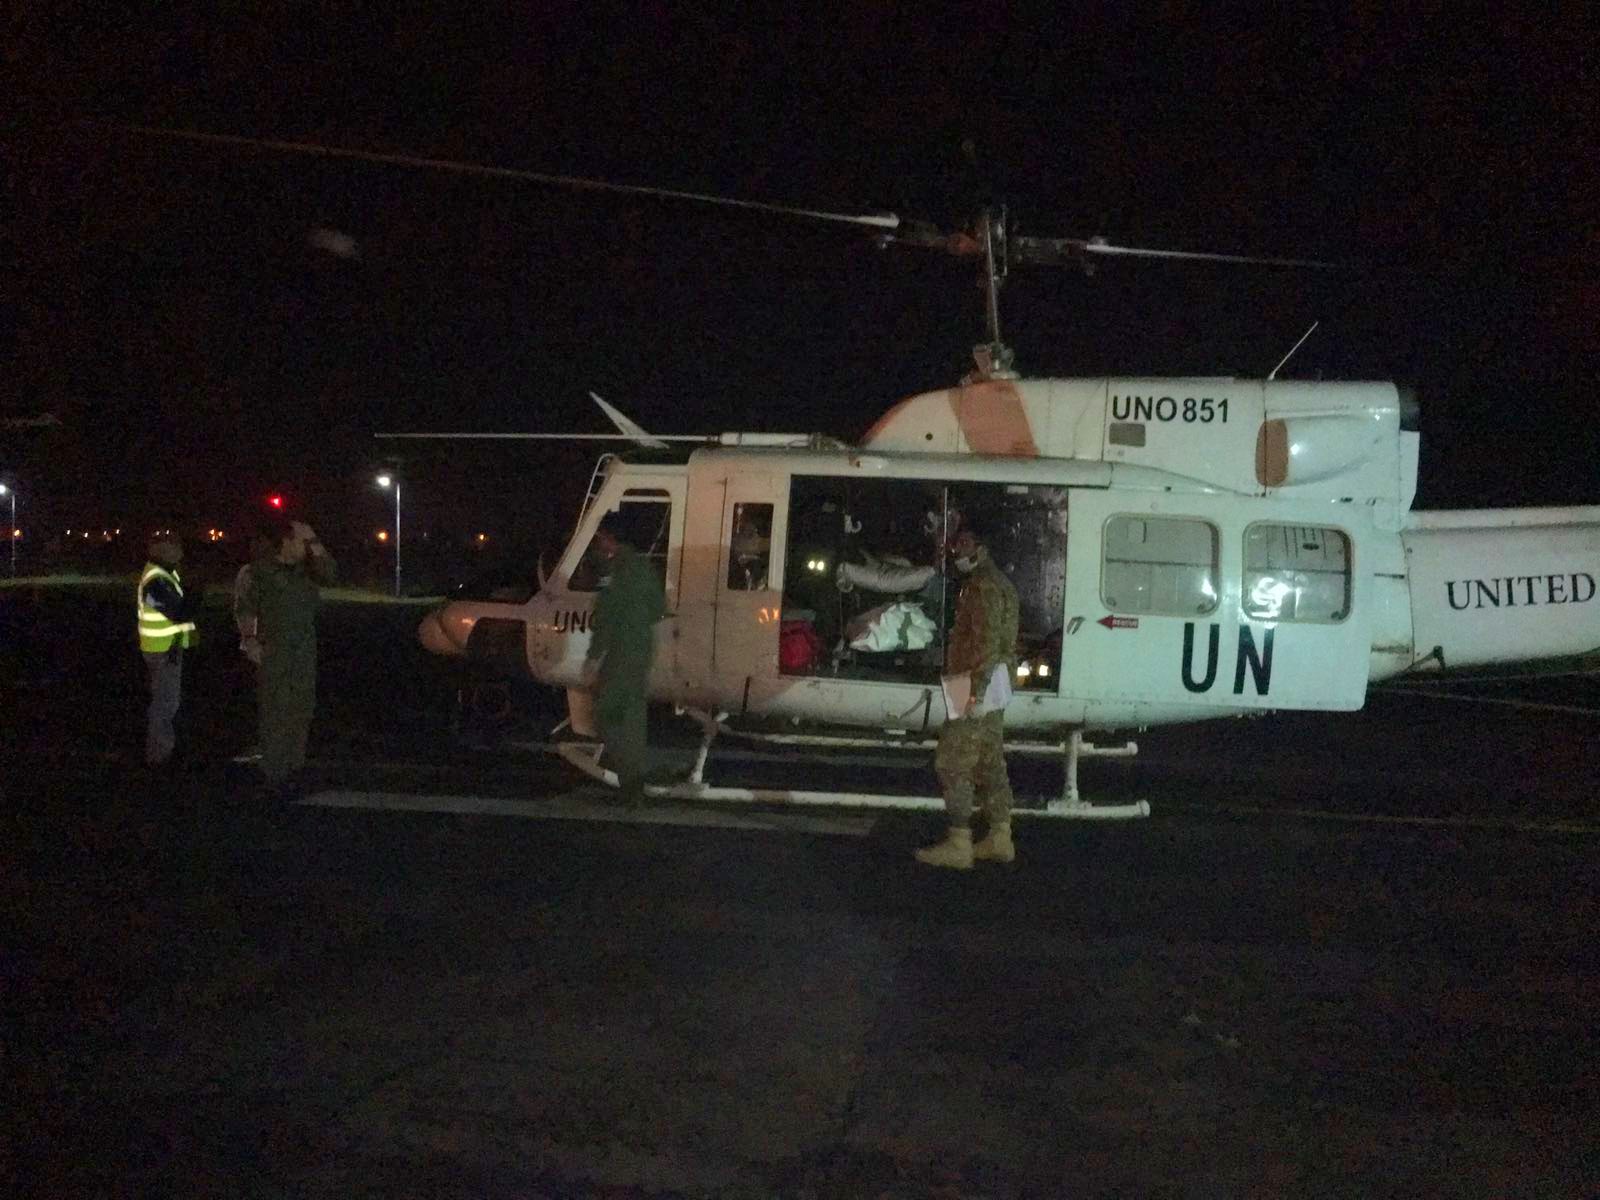 helicoptero de la UN